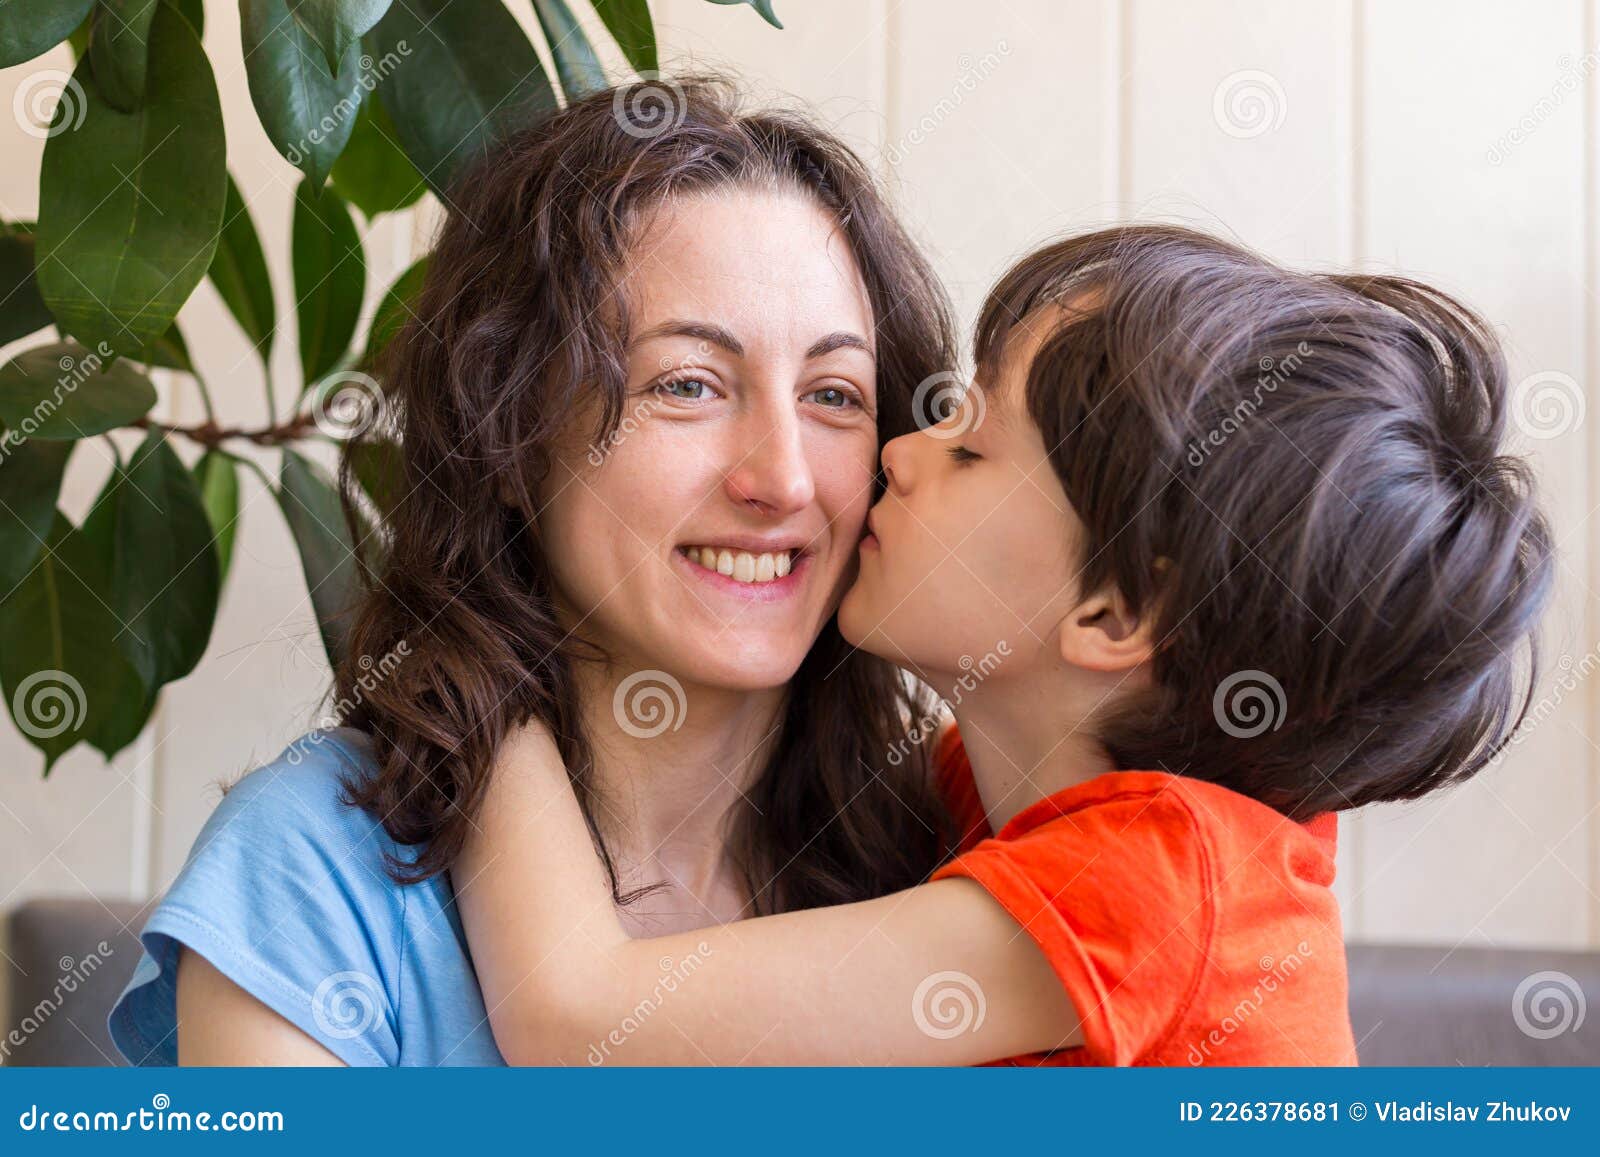 Видео целовать маму. С днем матери ребенок целует маму. Мальчик целует маму. Мальчик поздравляет маму. День матери мальчик целует маму.